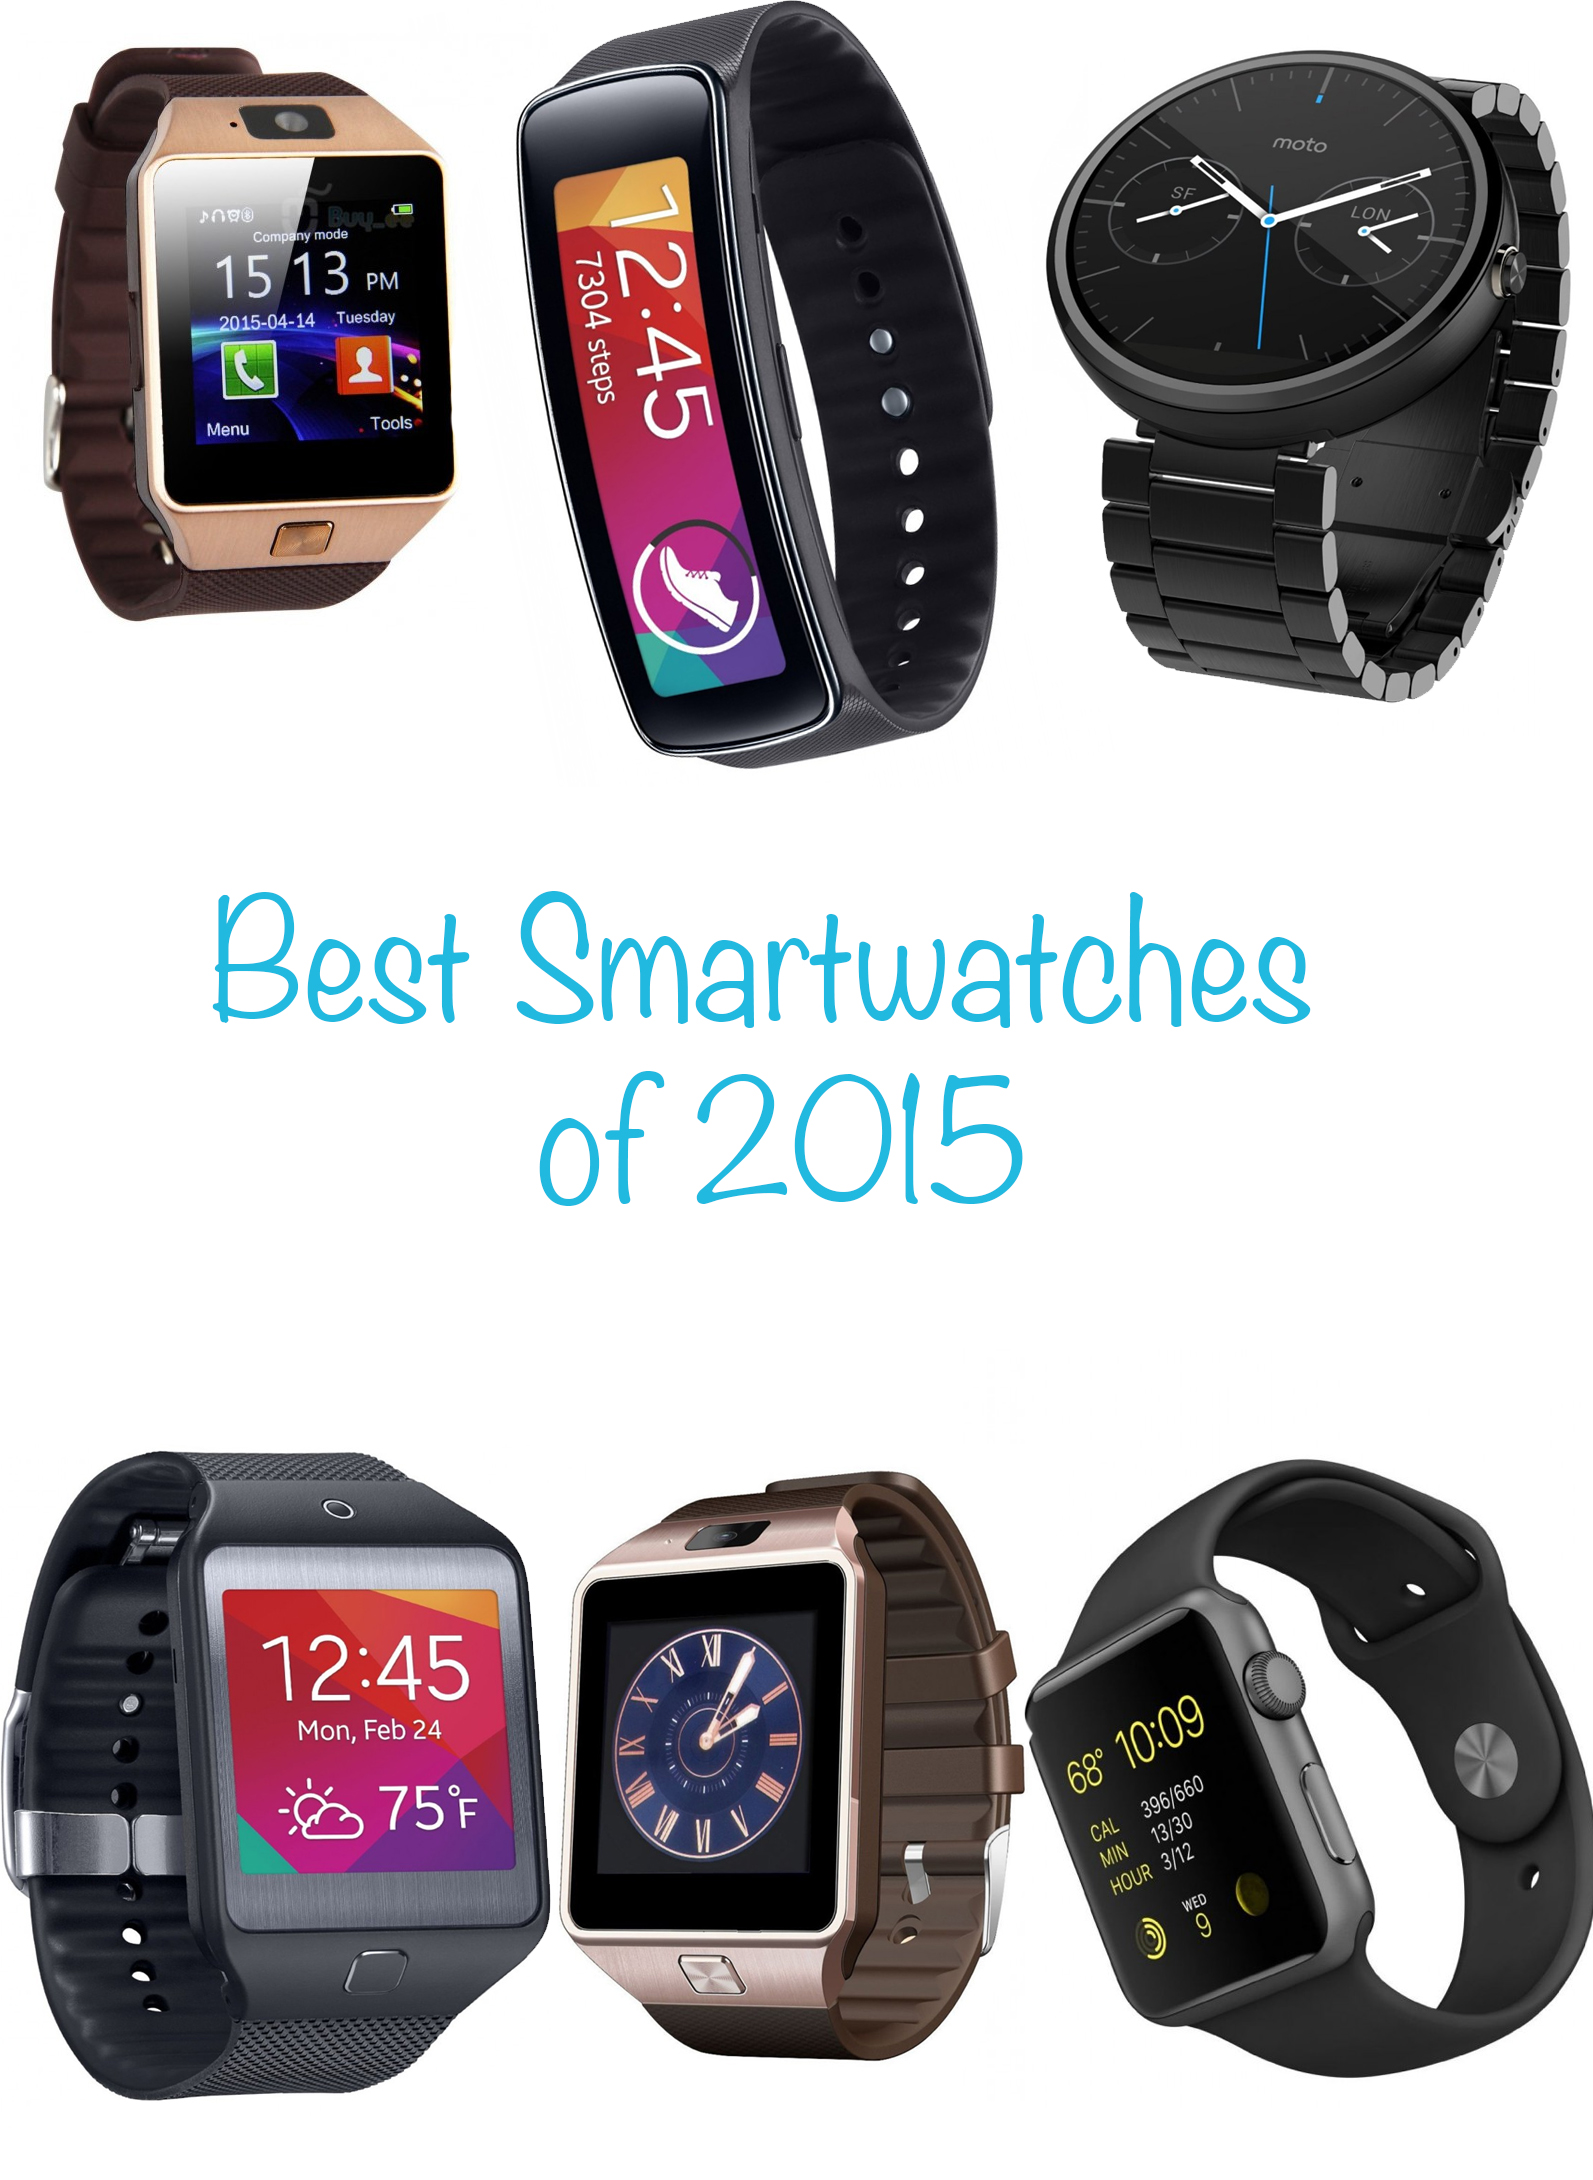 best smartwatch 2015